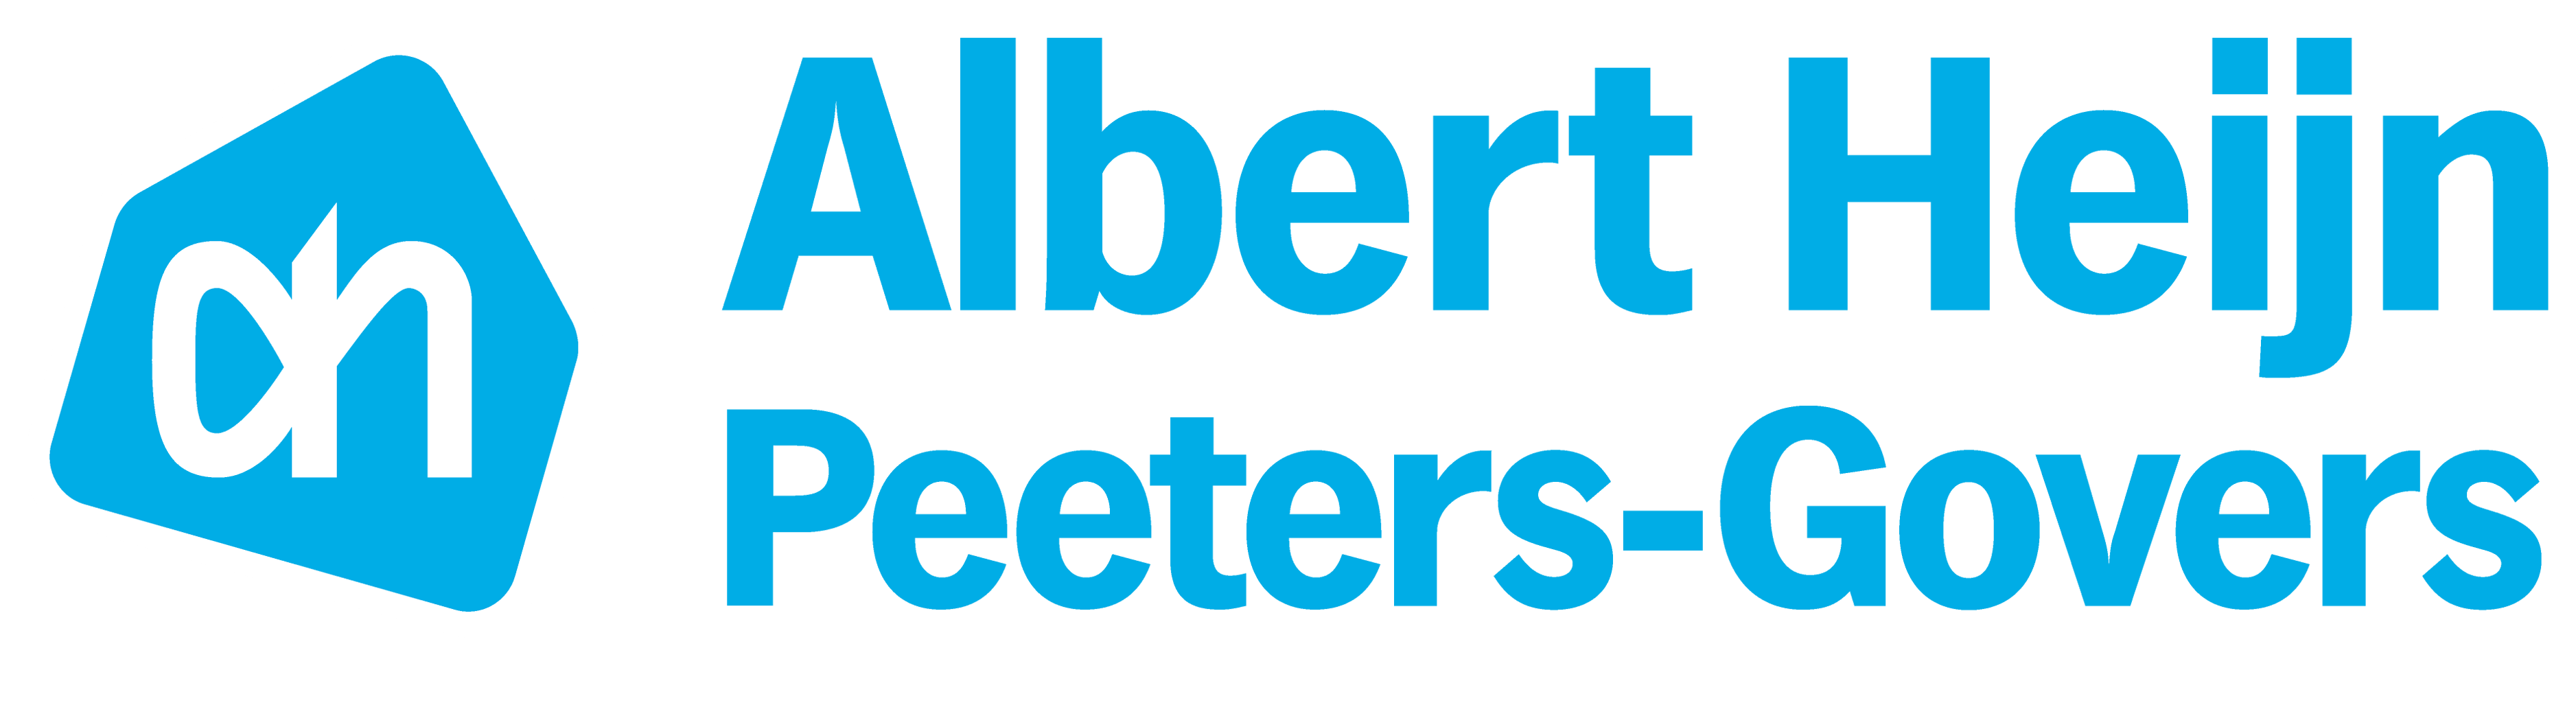 Logo Albert Heijn Peeters-Govers